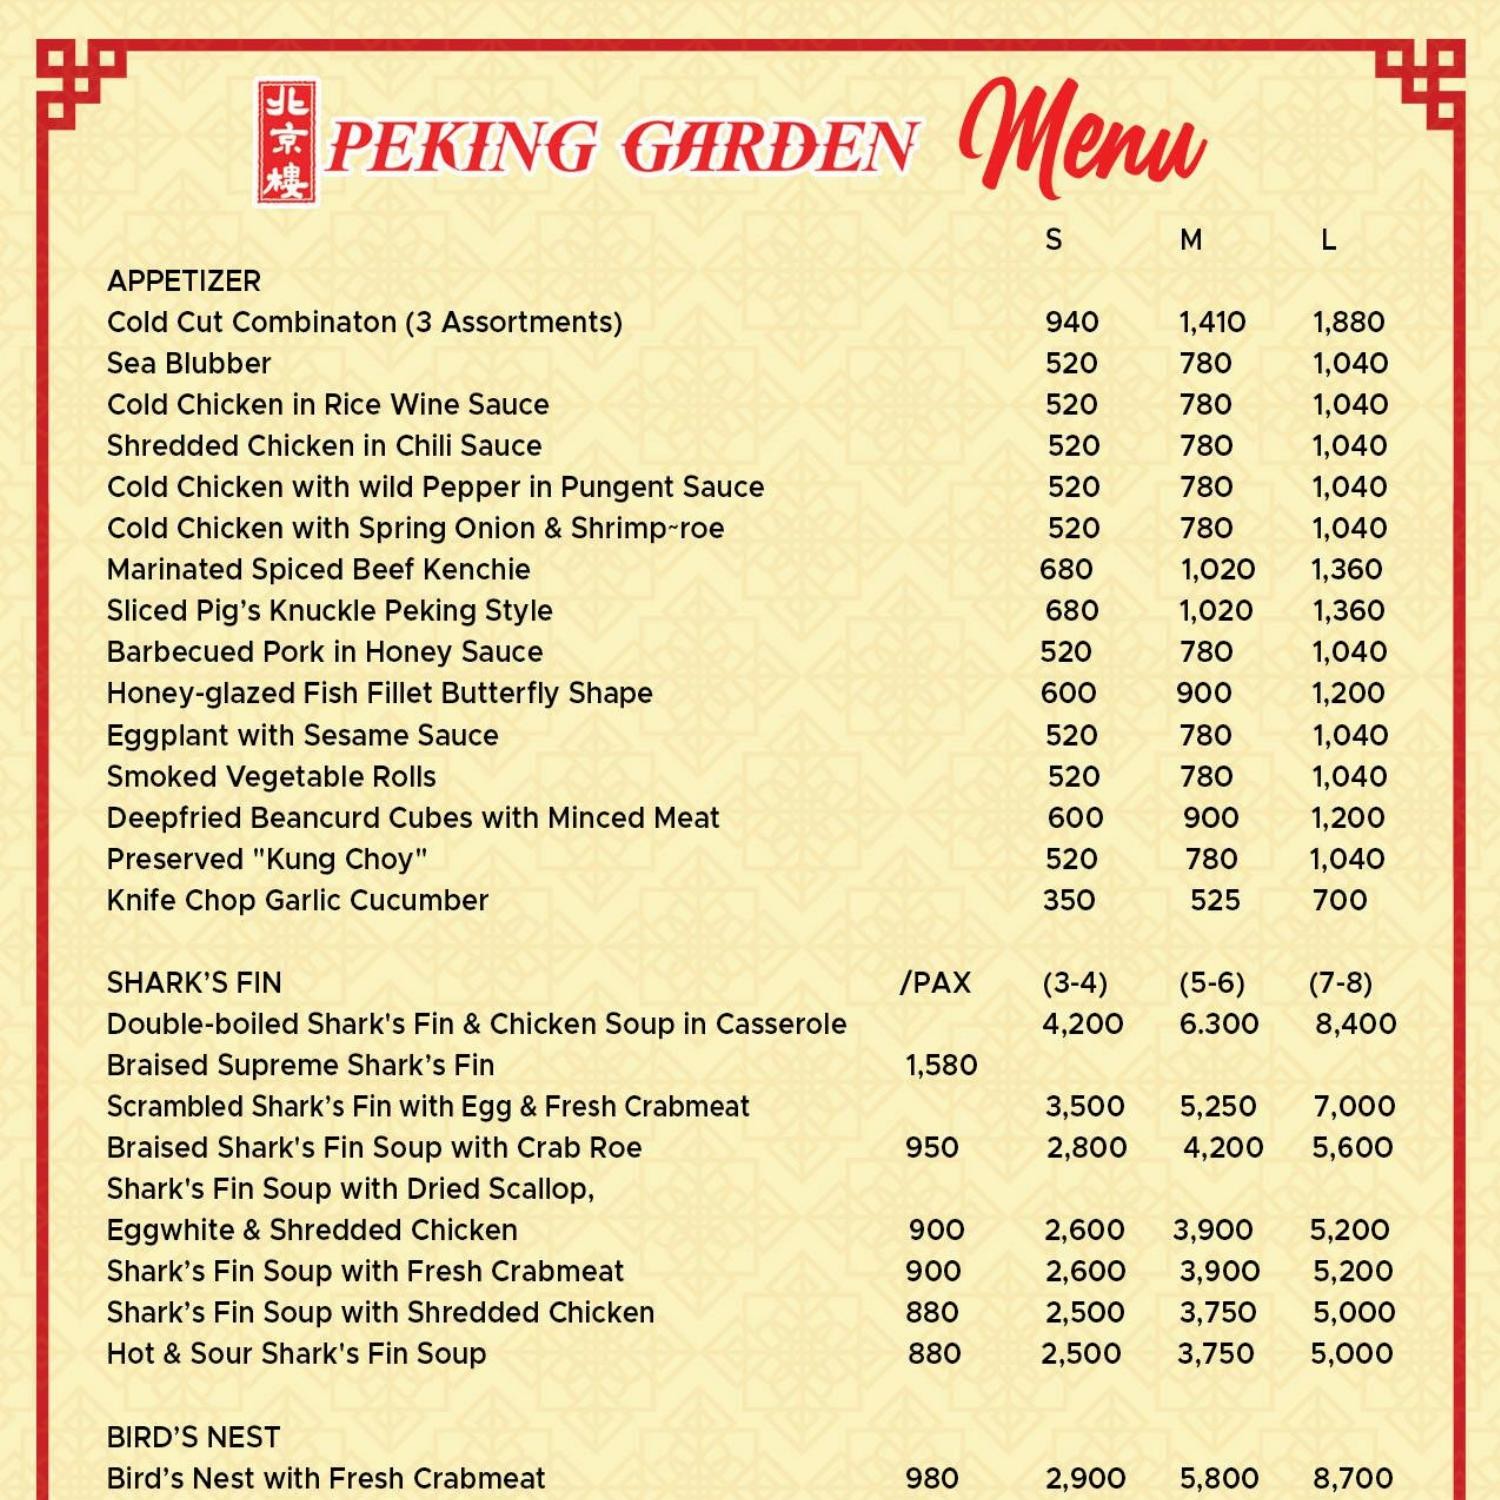 The garden menu